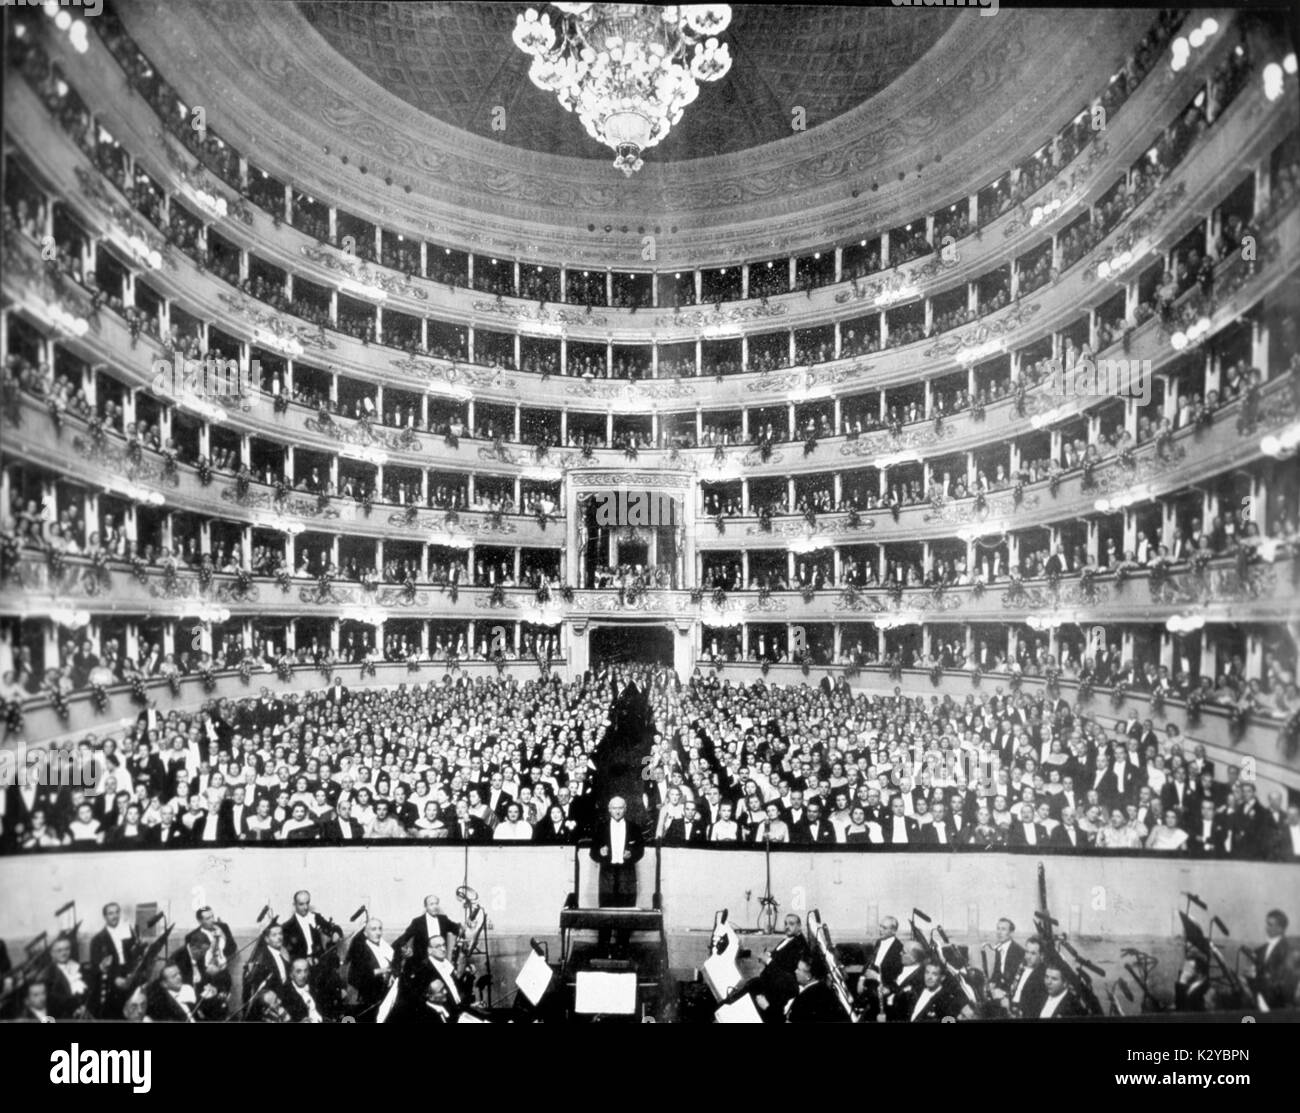 Victor de Sabata - realización en La Scala de Milán, Italia, en ocasión de la conmemoración de Puccini. VdS: director de orquesta y compositor italiano el 10 de abril de 1892 - 11 de diciembre de 1967. Foto de stock